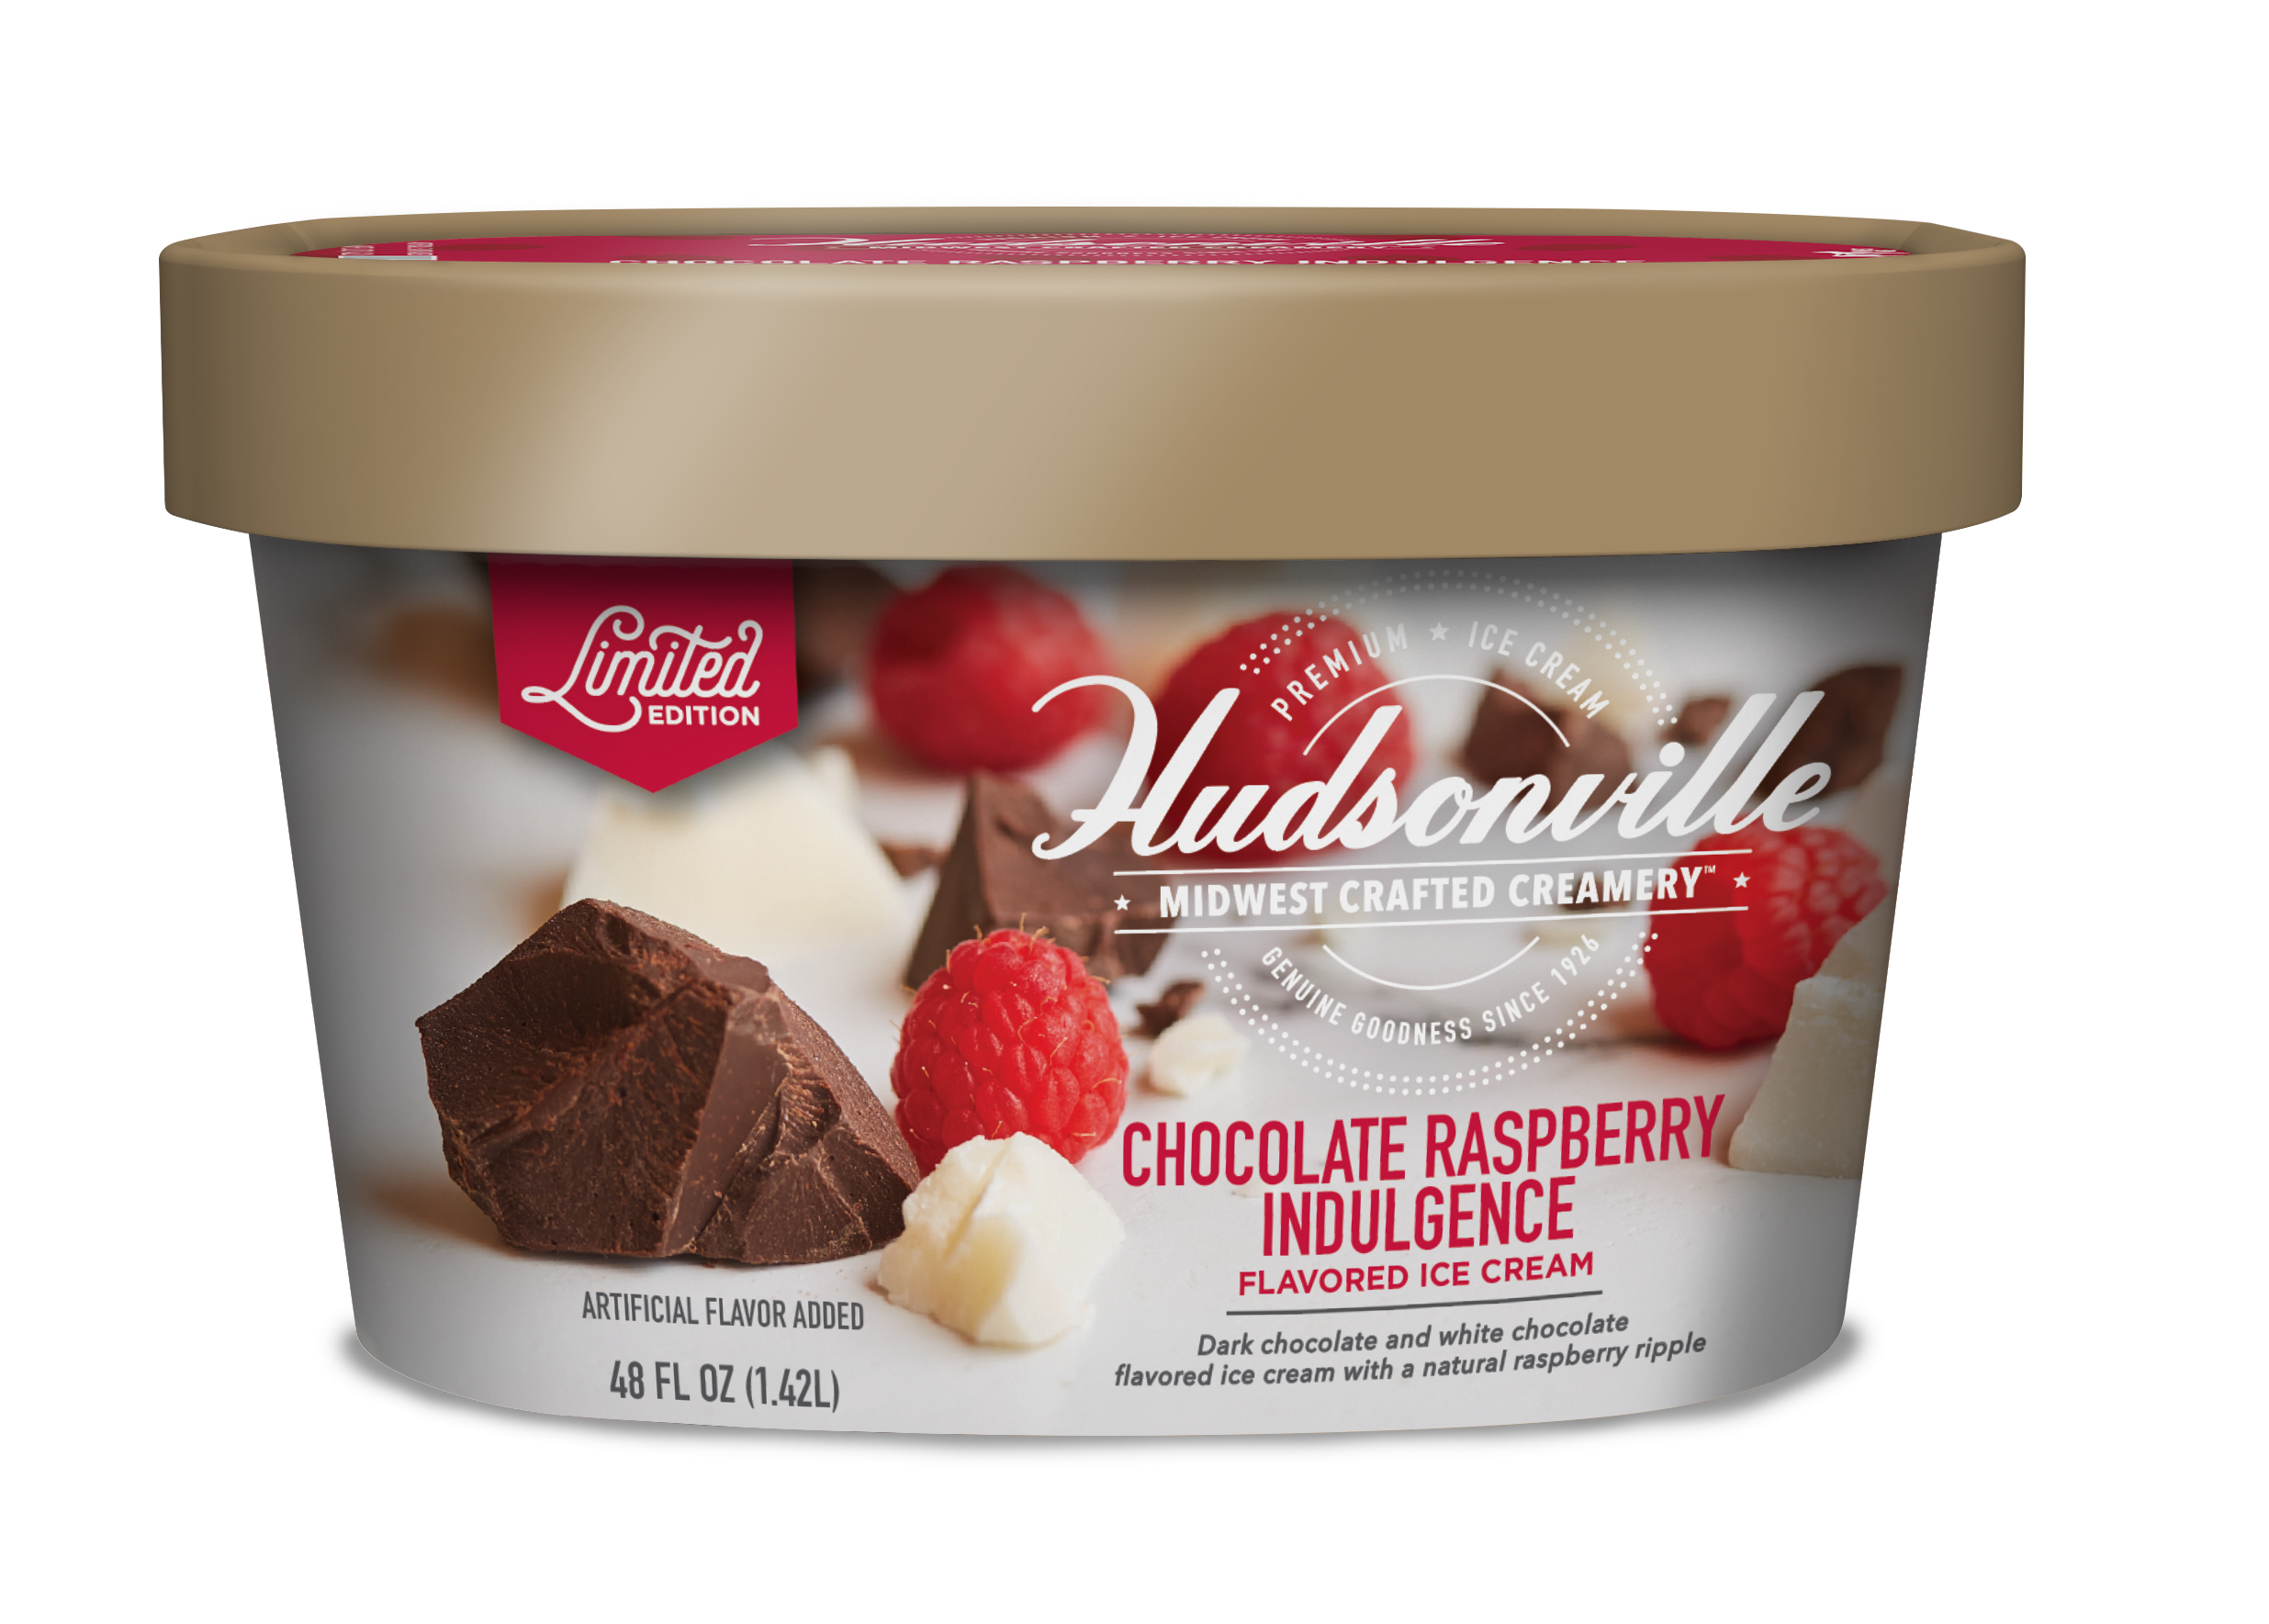 Hudsonville Ice Cream: Chocolate Raspberry Indulgence 